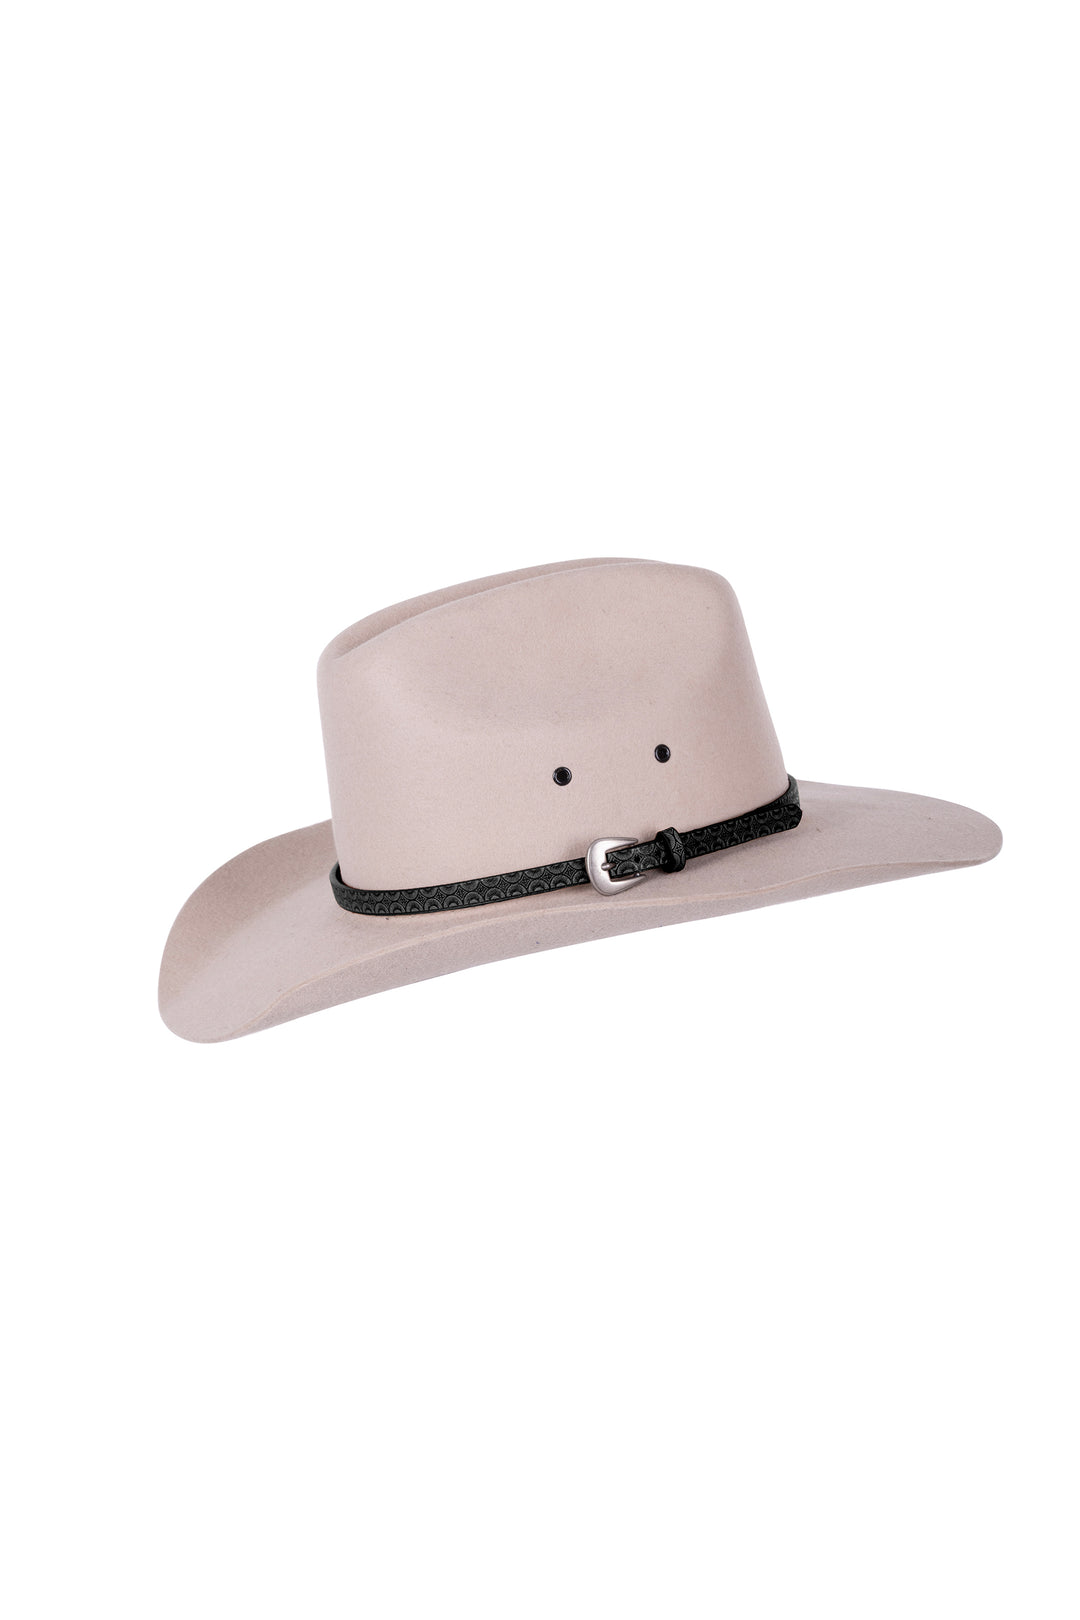 Pure Western - Terri Hat Band Black